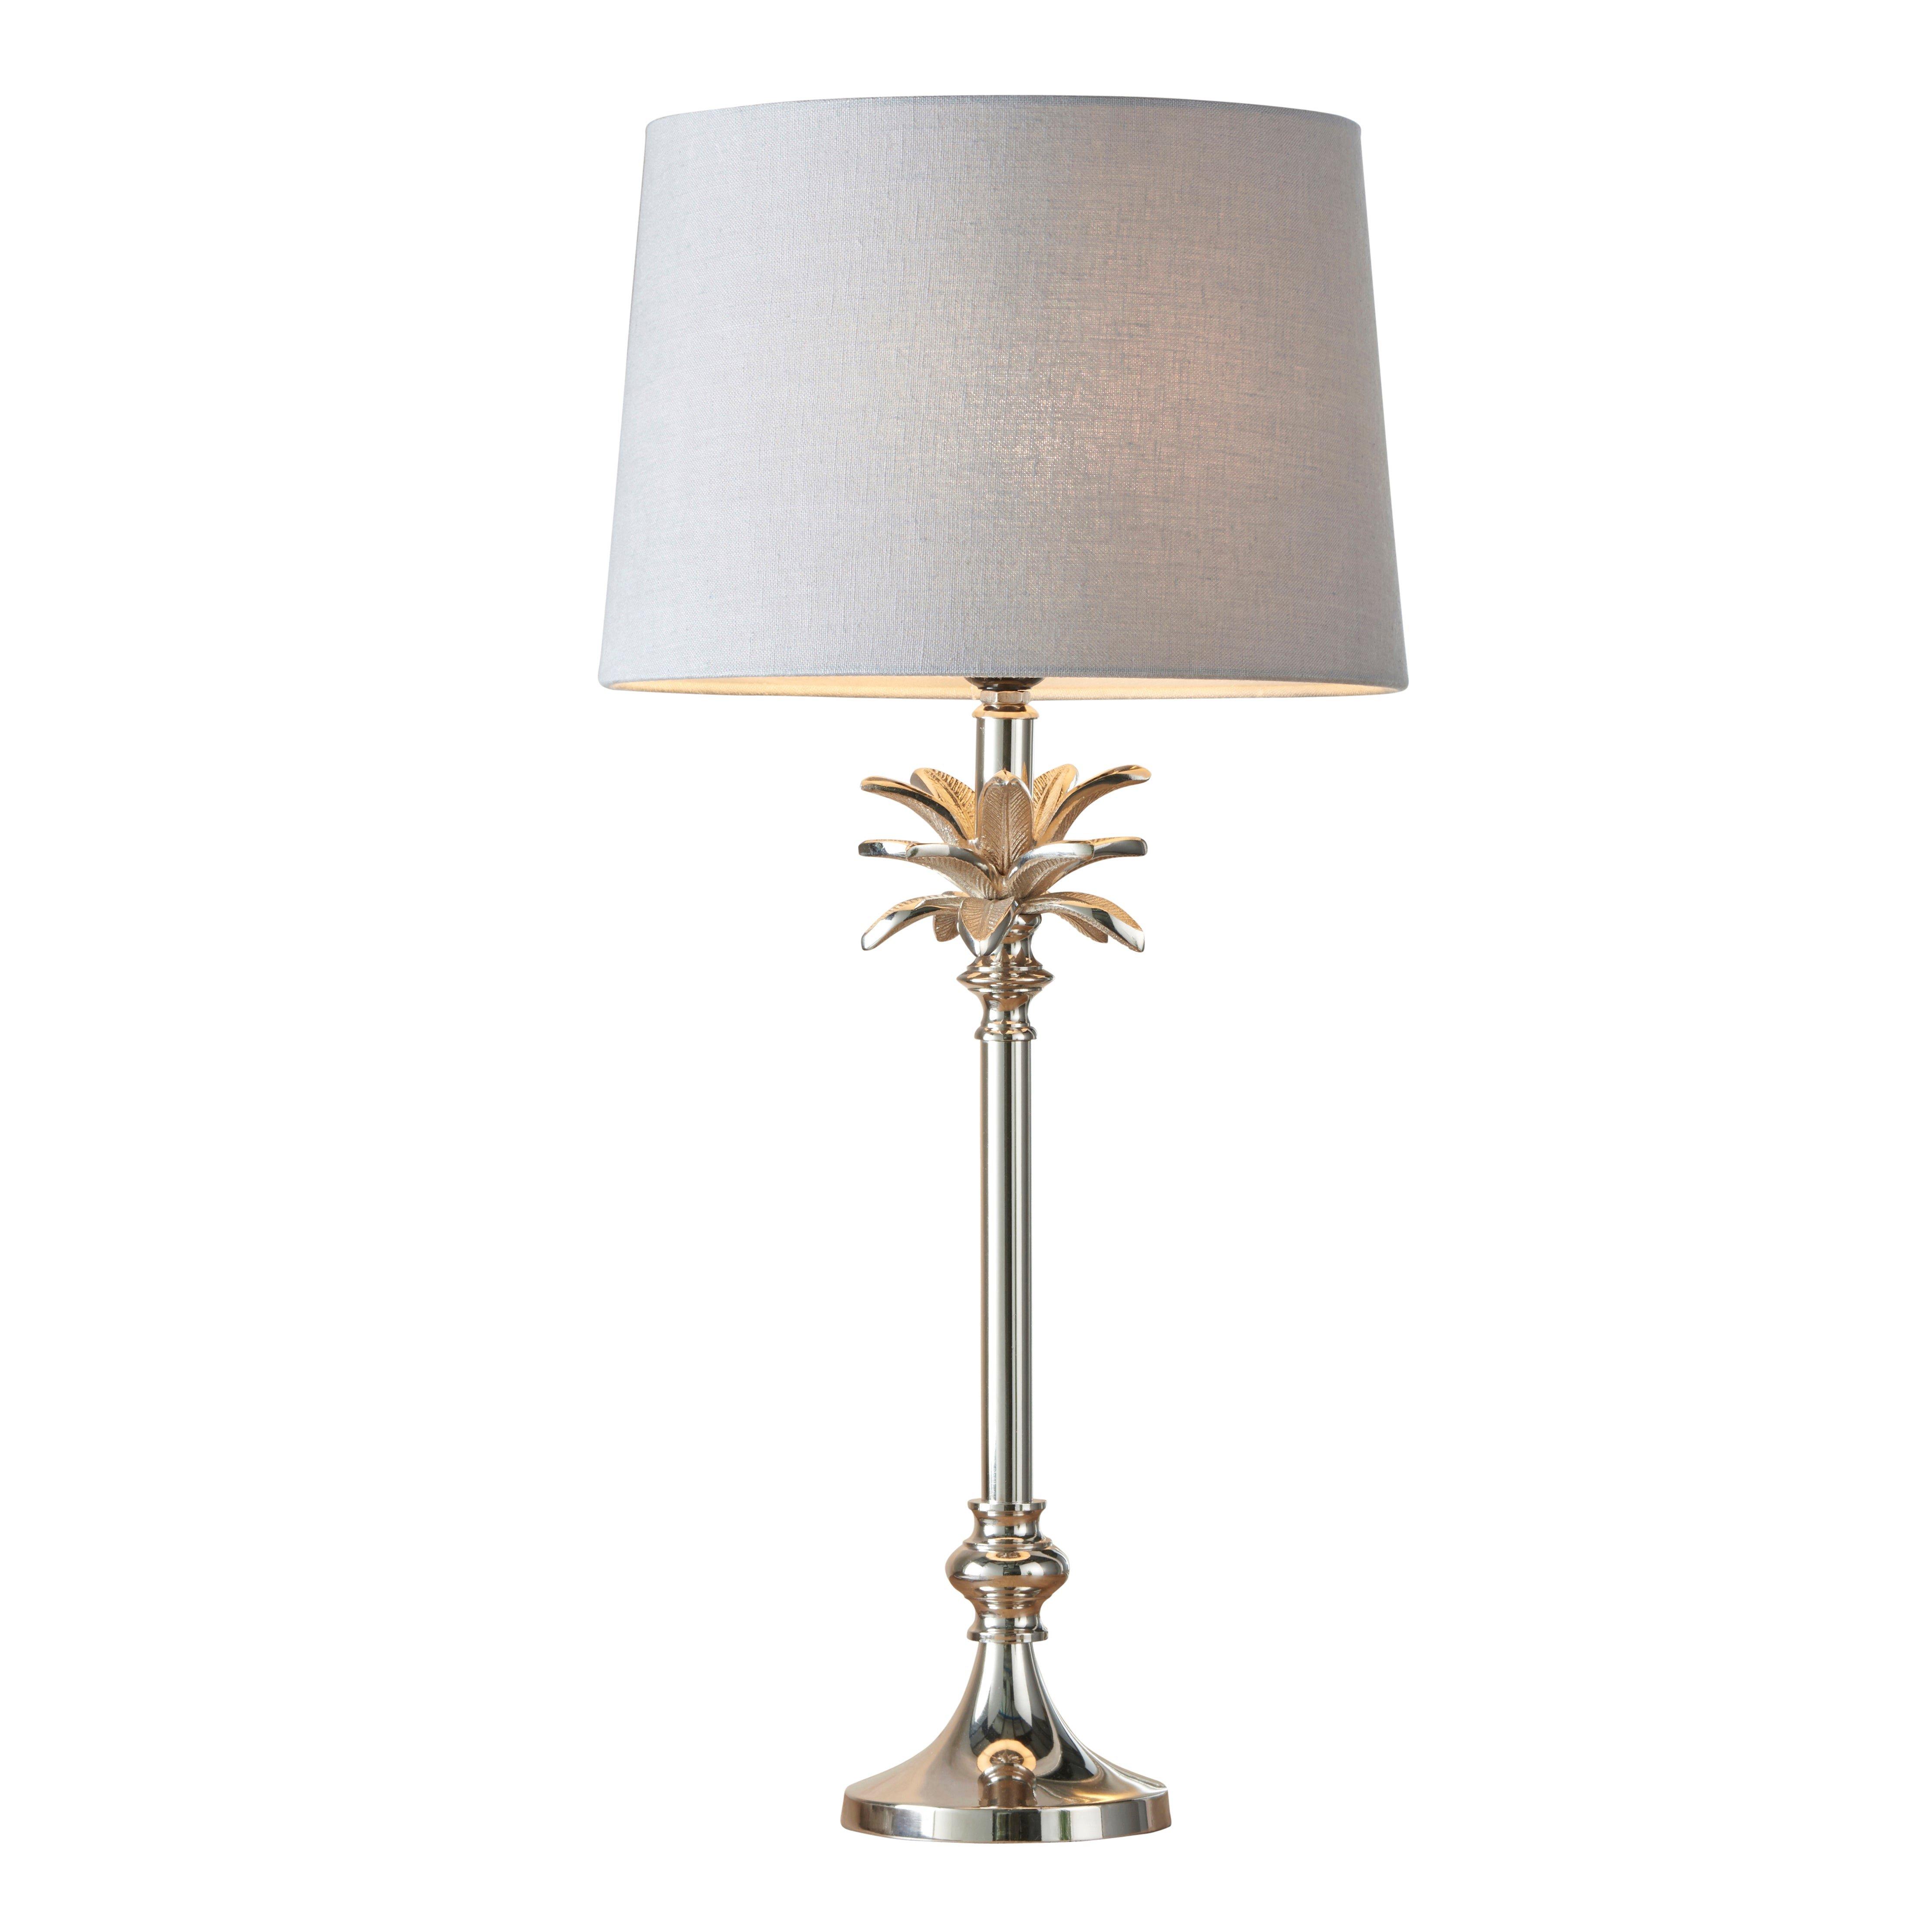 Table Lamp Polished Nickel & Charcoal Linen 60W E27 Base & Shade e10387